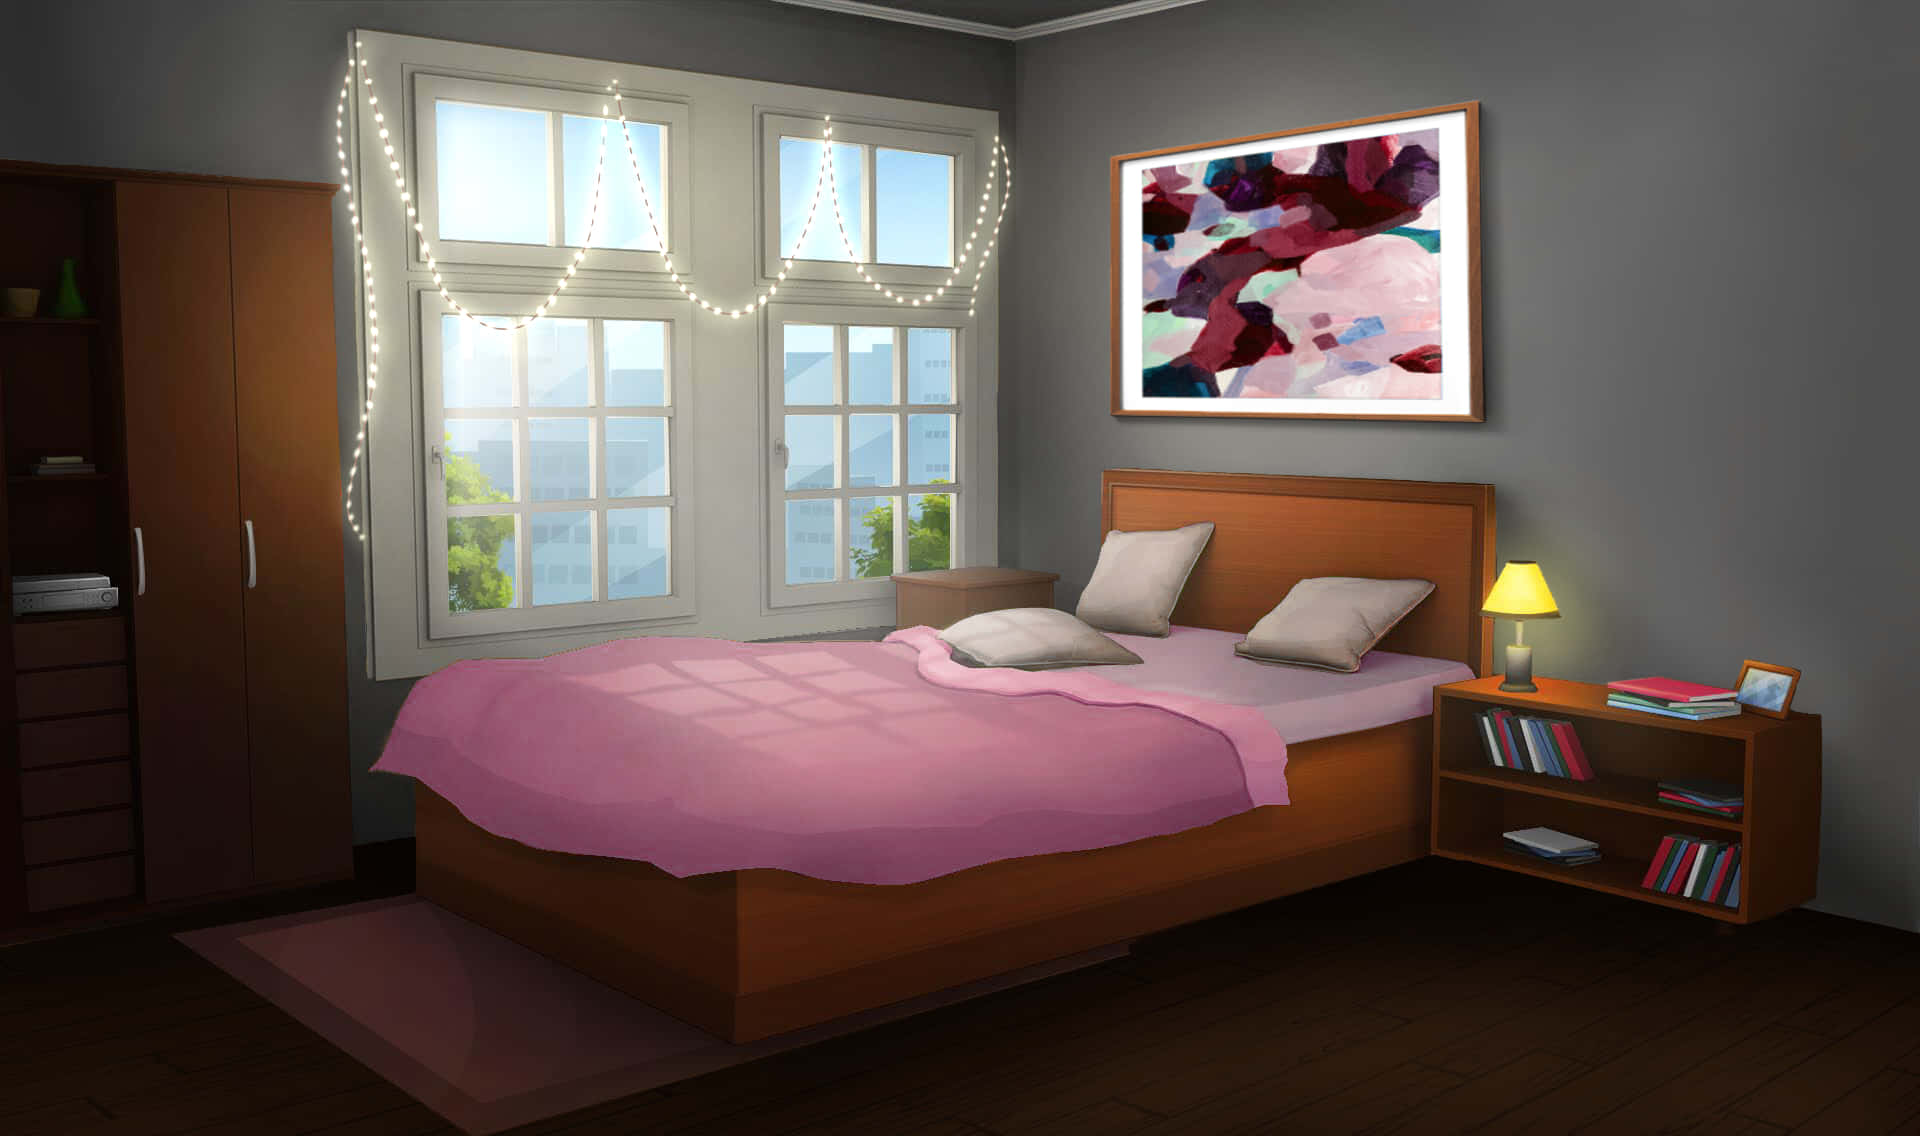 Hãy cùng chiêm ngưỡng phòng ngủ anime đáng yêu, từ những họa tiết nhỏ xinh đến các loại giường kute. Hình ảnh đầy màu sắc và tươi sáng sẽ khiến bạn muốn đắm chìm trong không gian thần tiên đó mãi mãi.